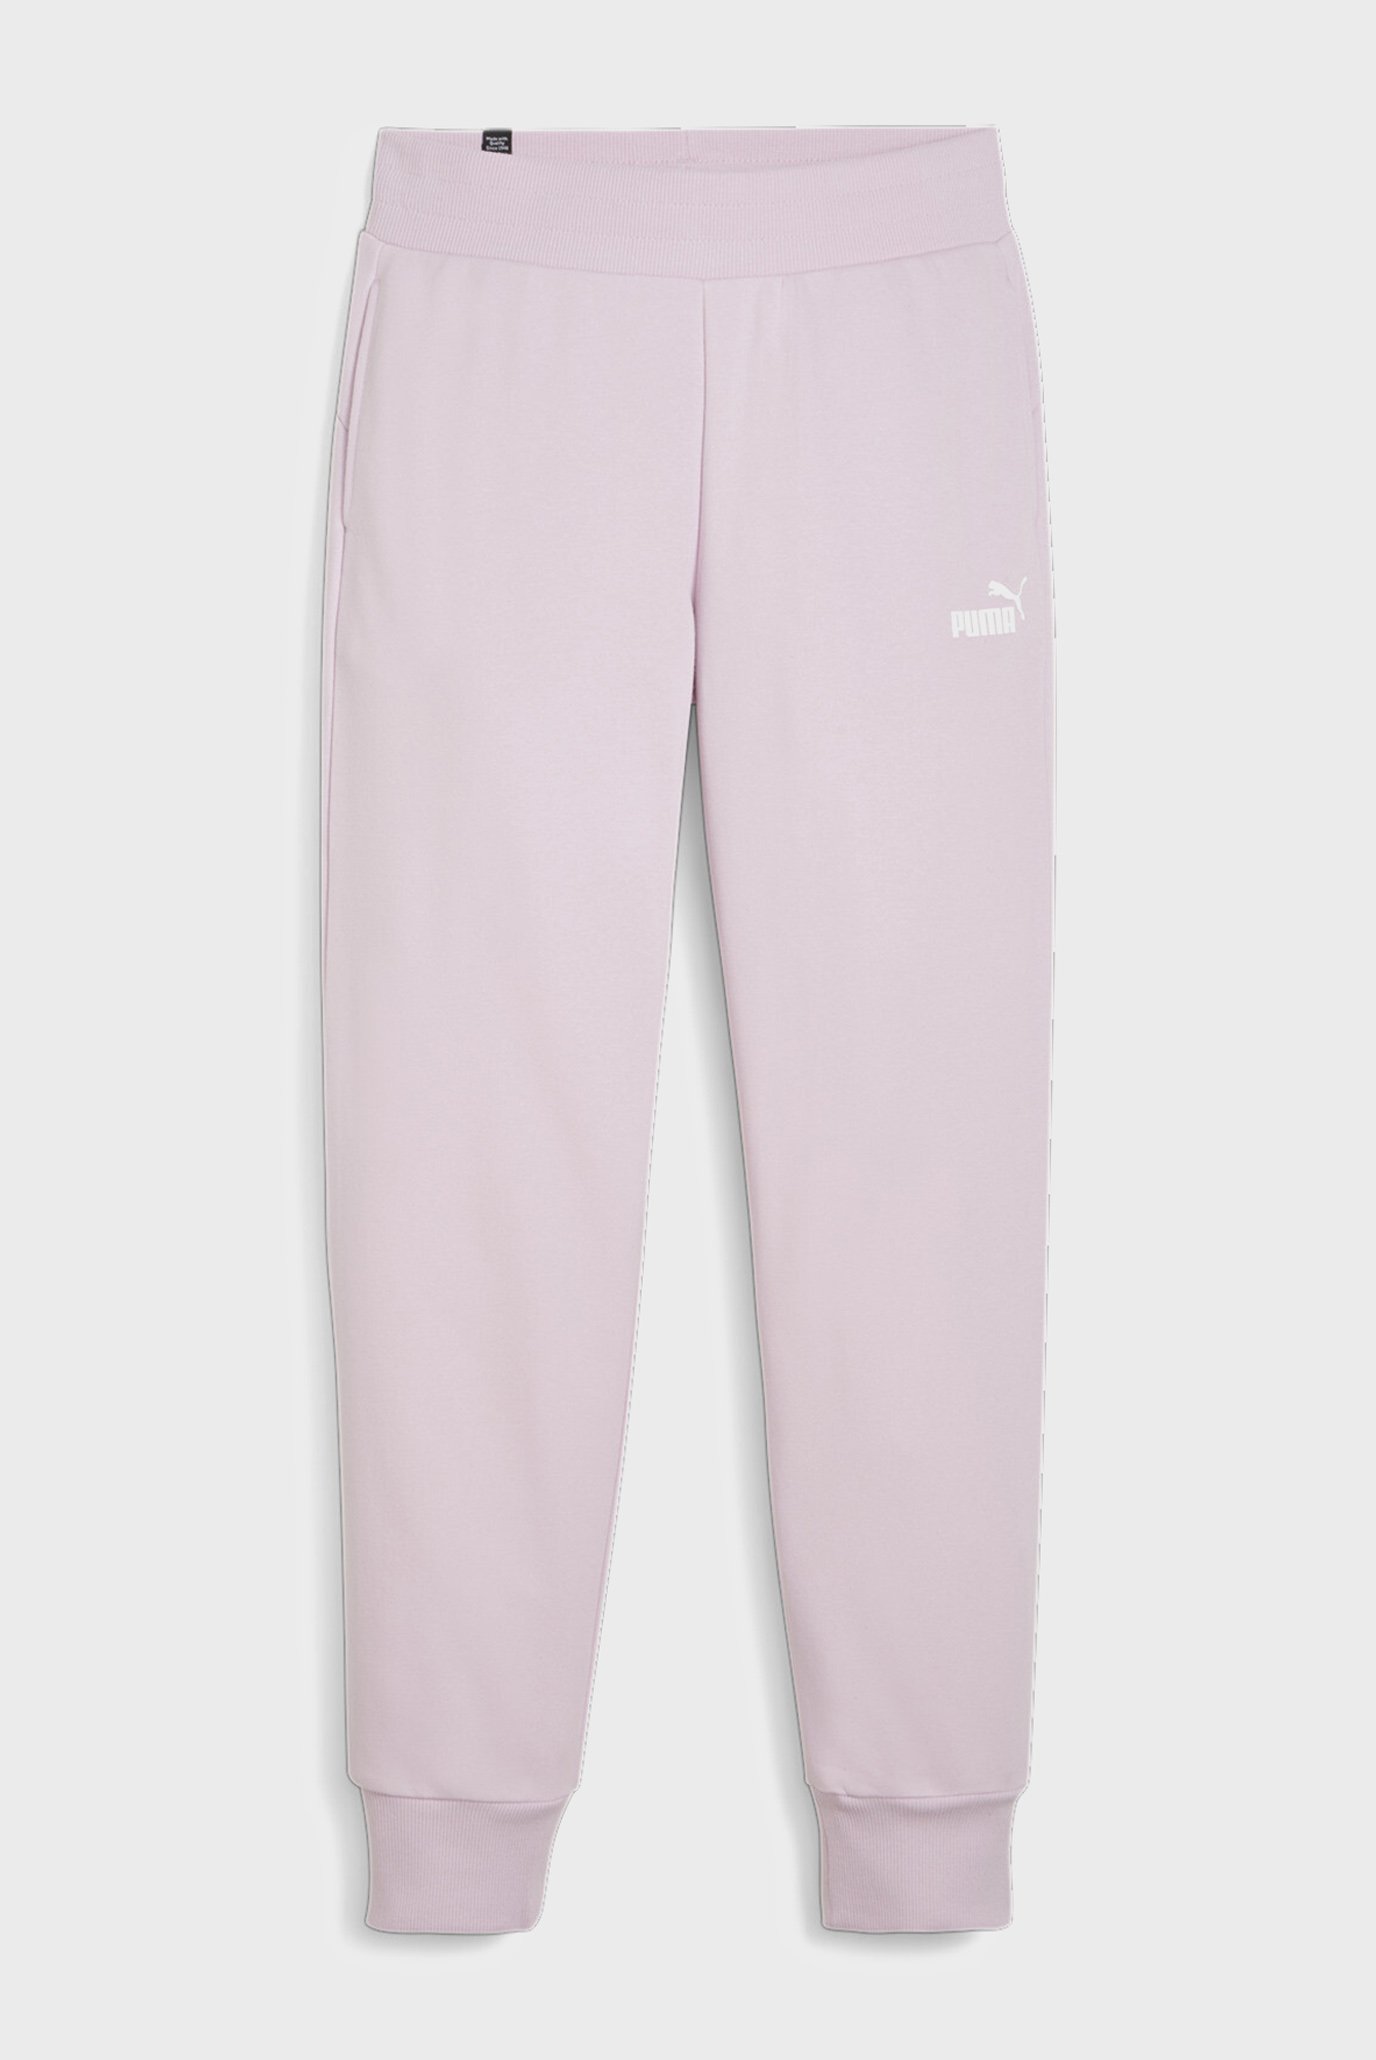 Женские сиреневые спортивные брюки Essentials Women’s Sweatpants 1